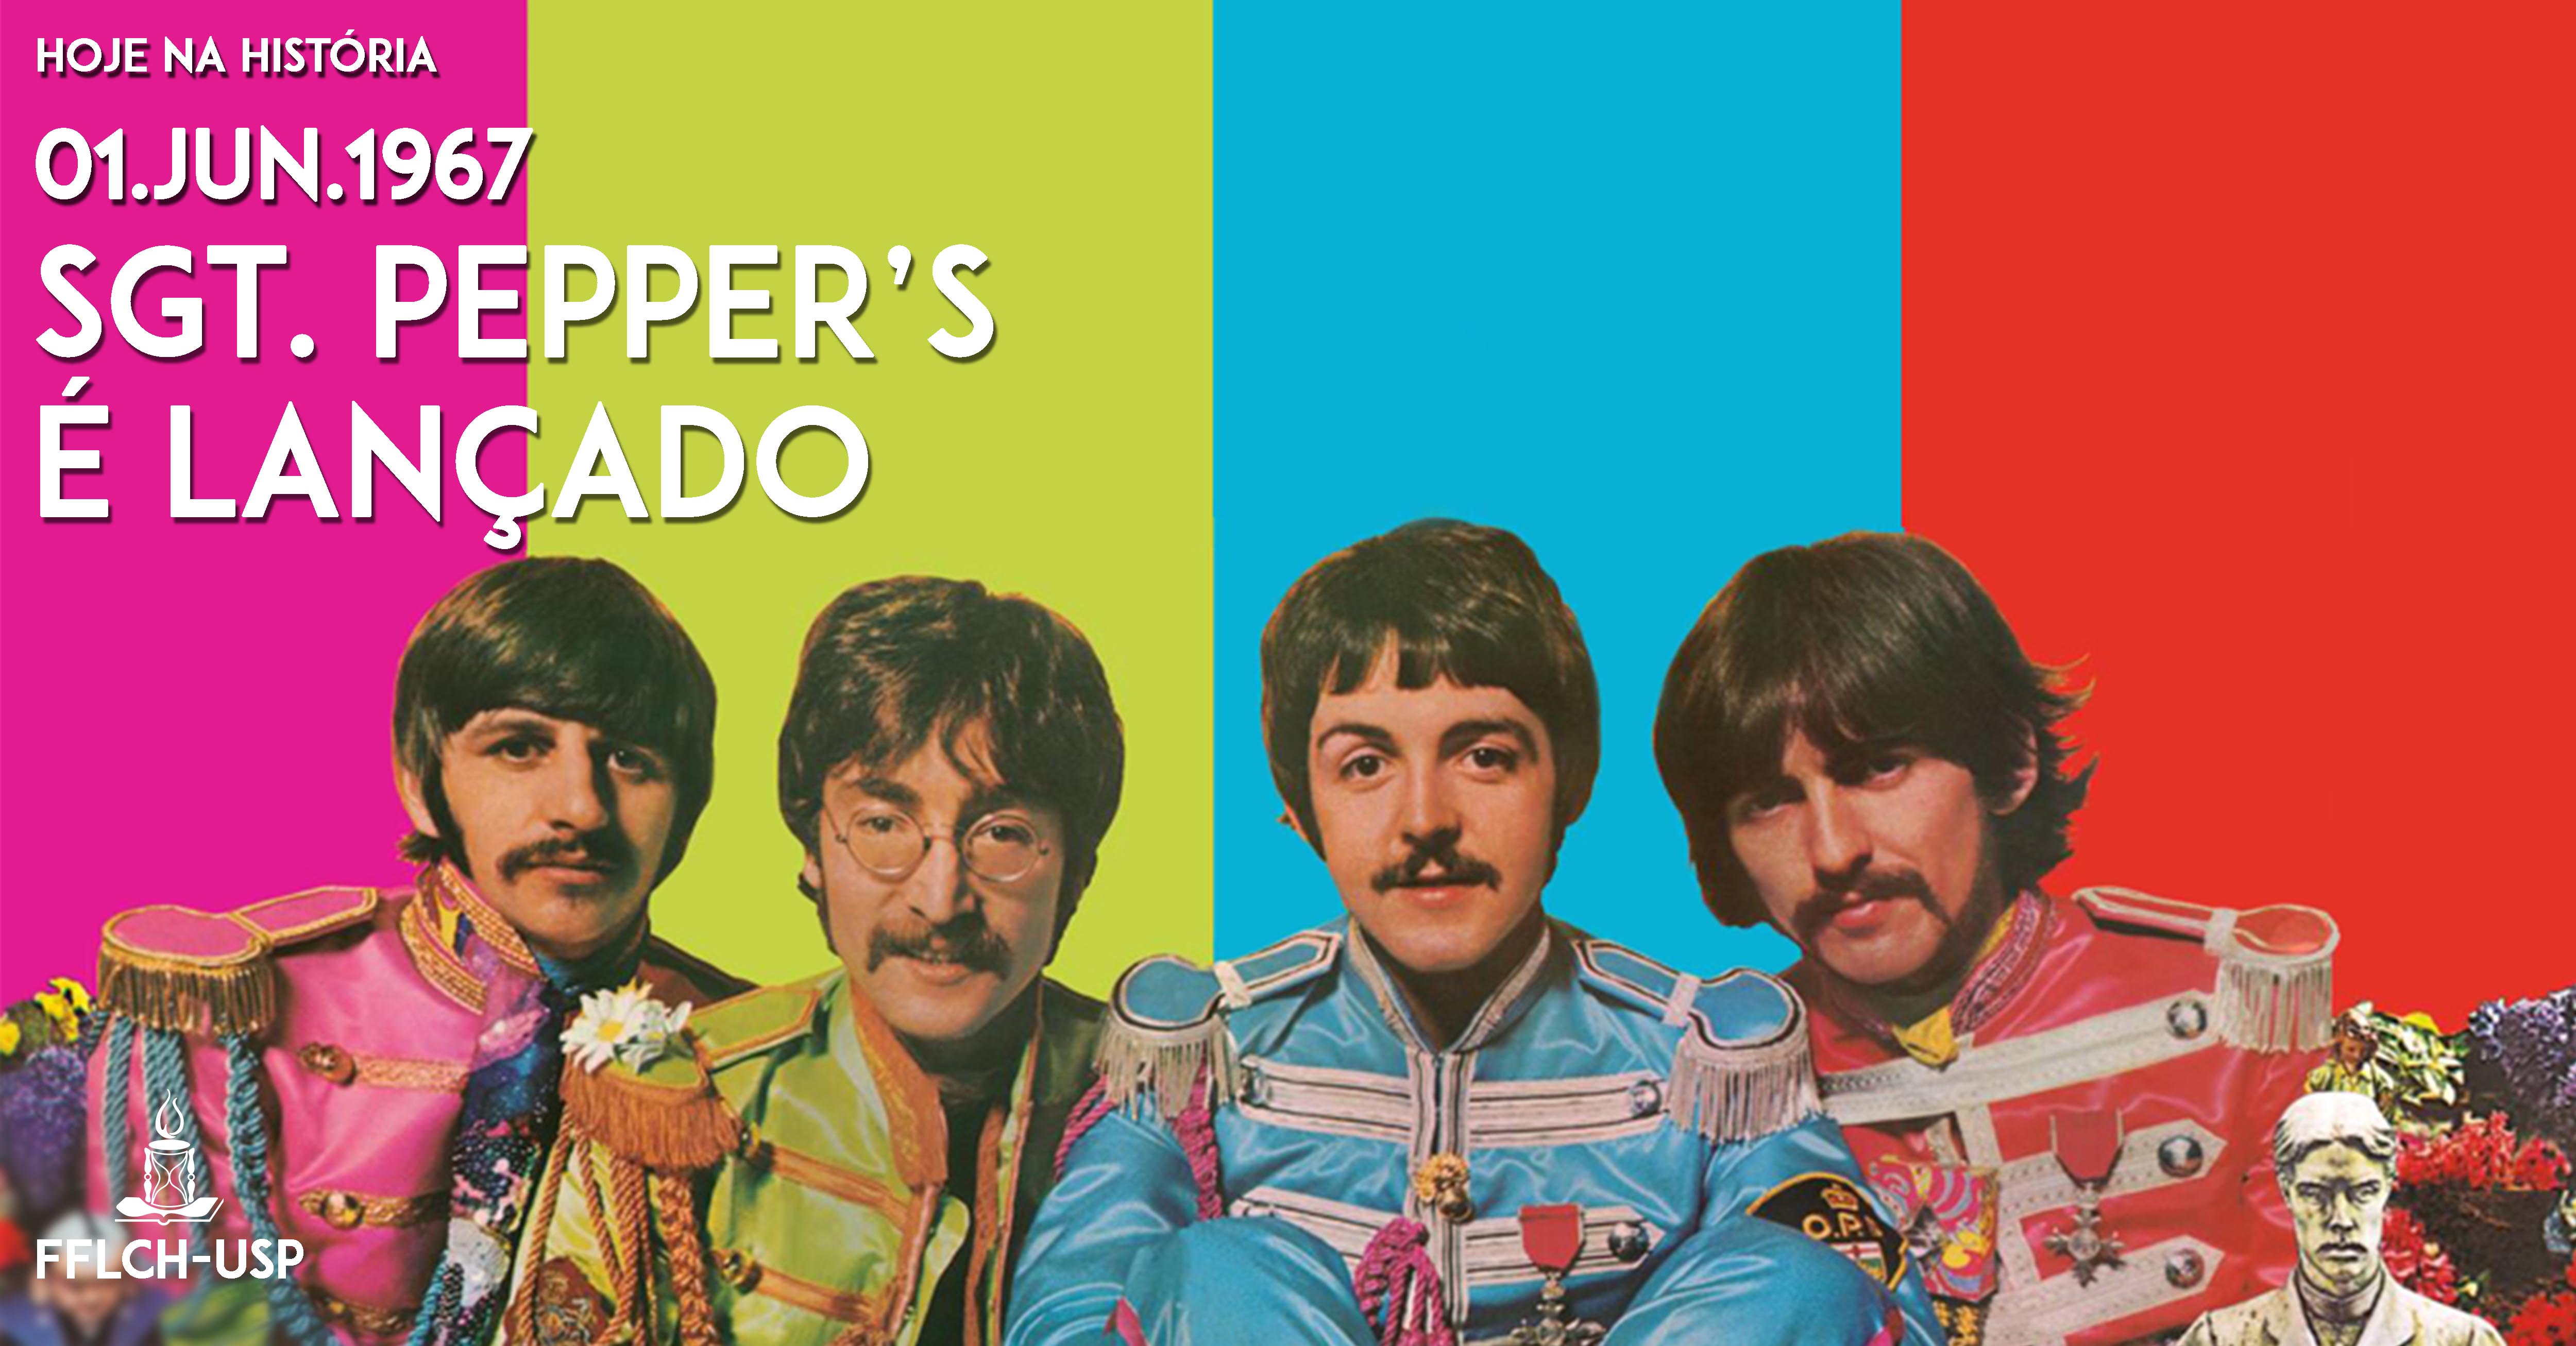 O álbum Sgt. Peppers é lançado e a contracultura é fortalecida no ocidente